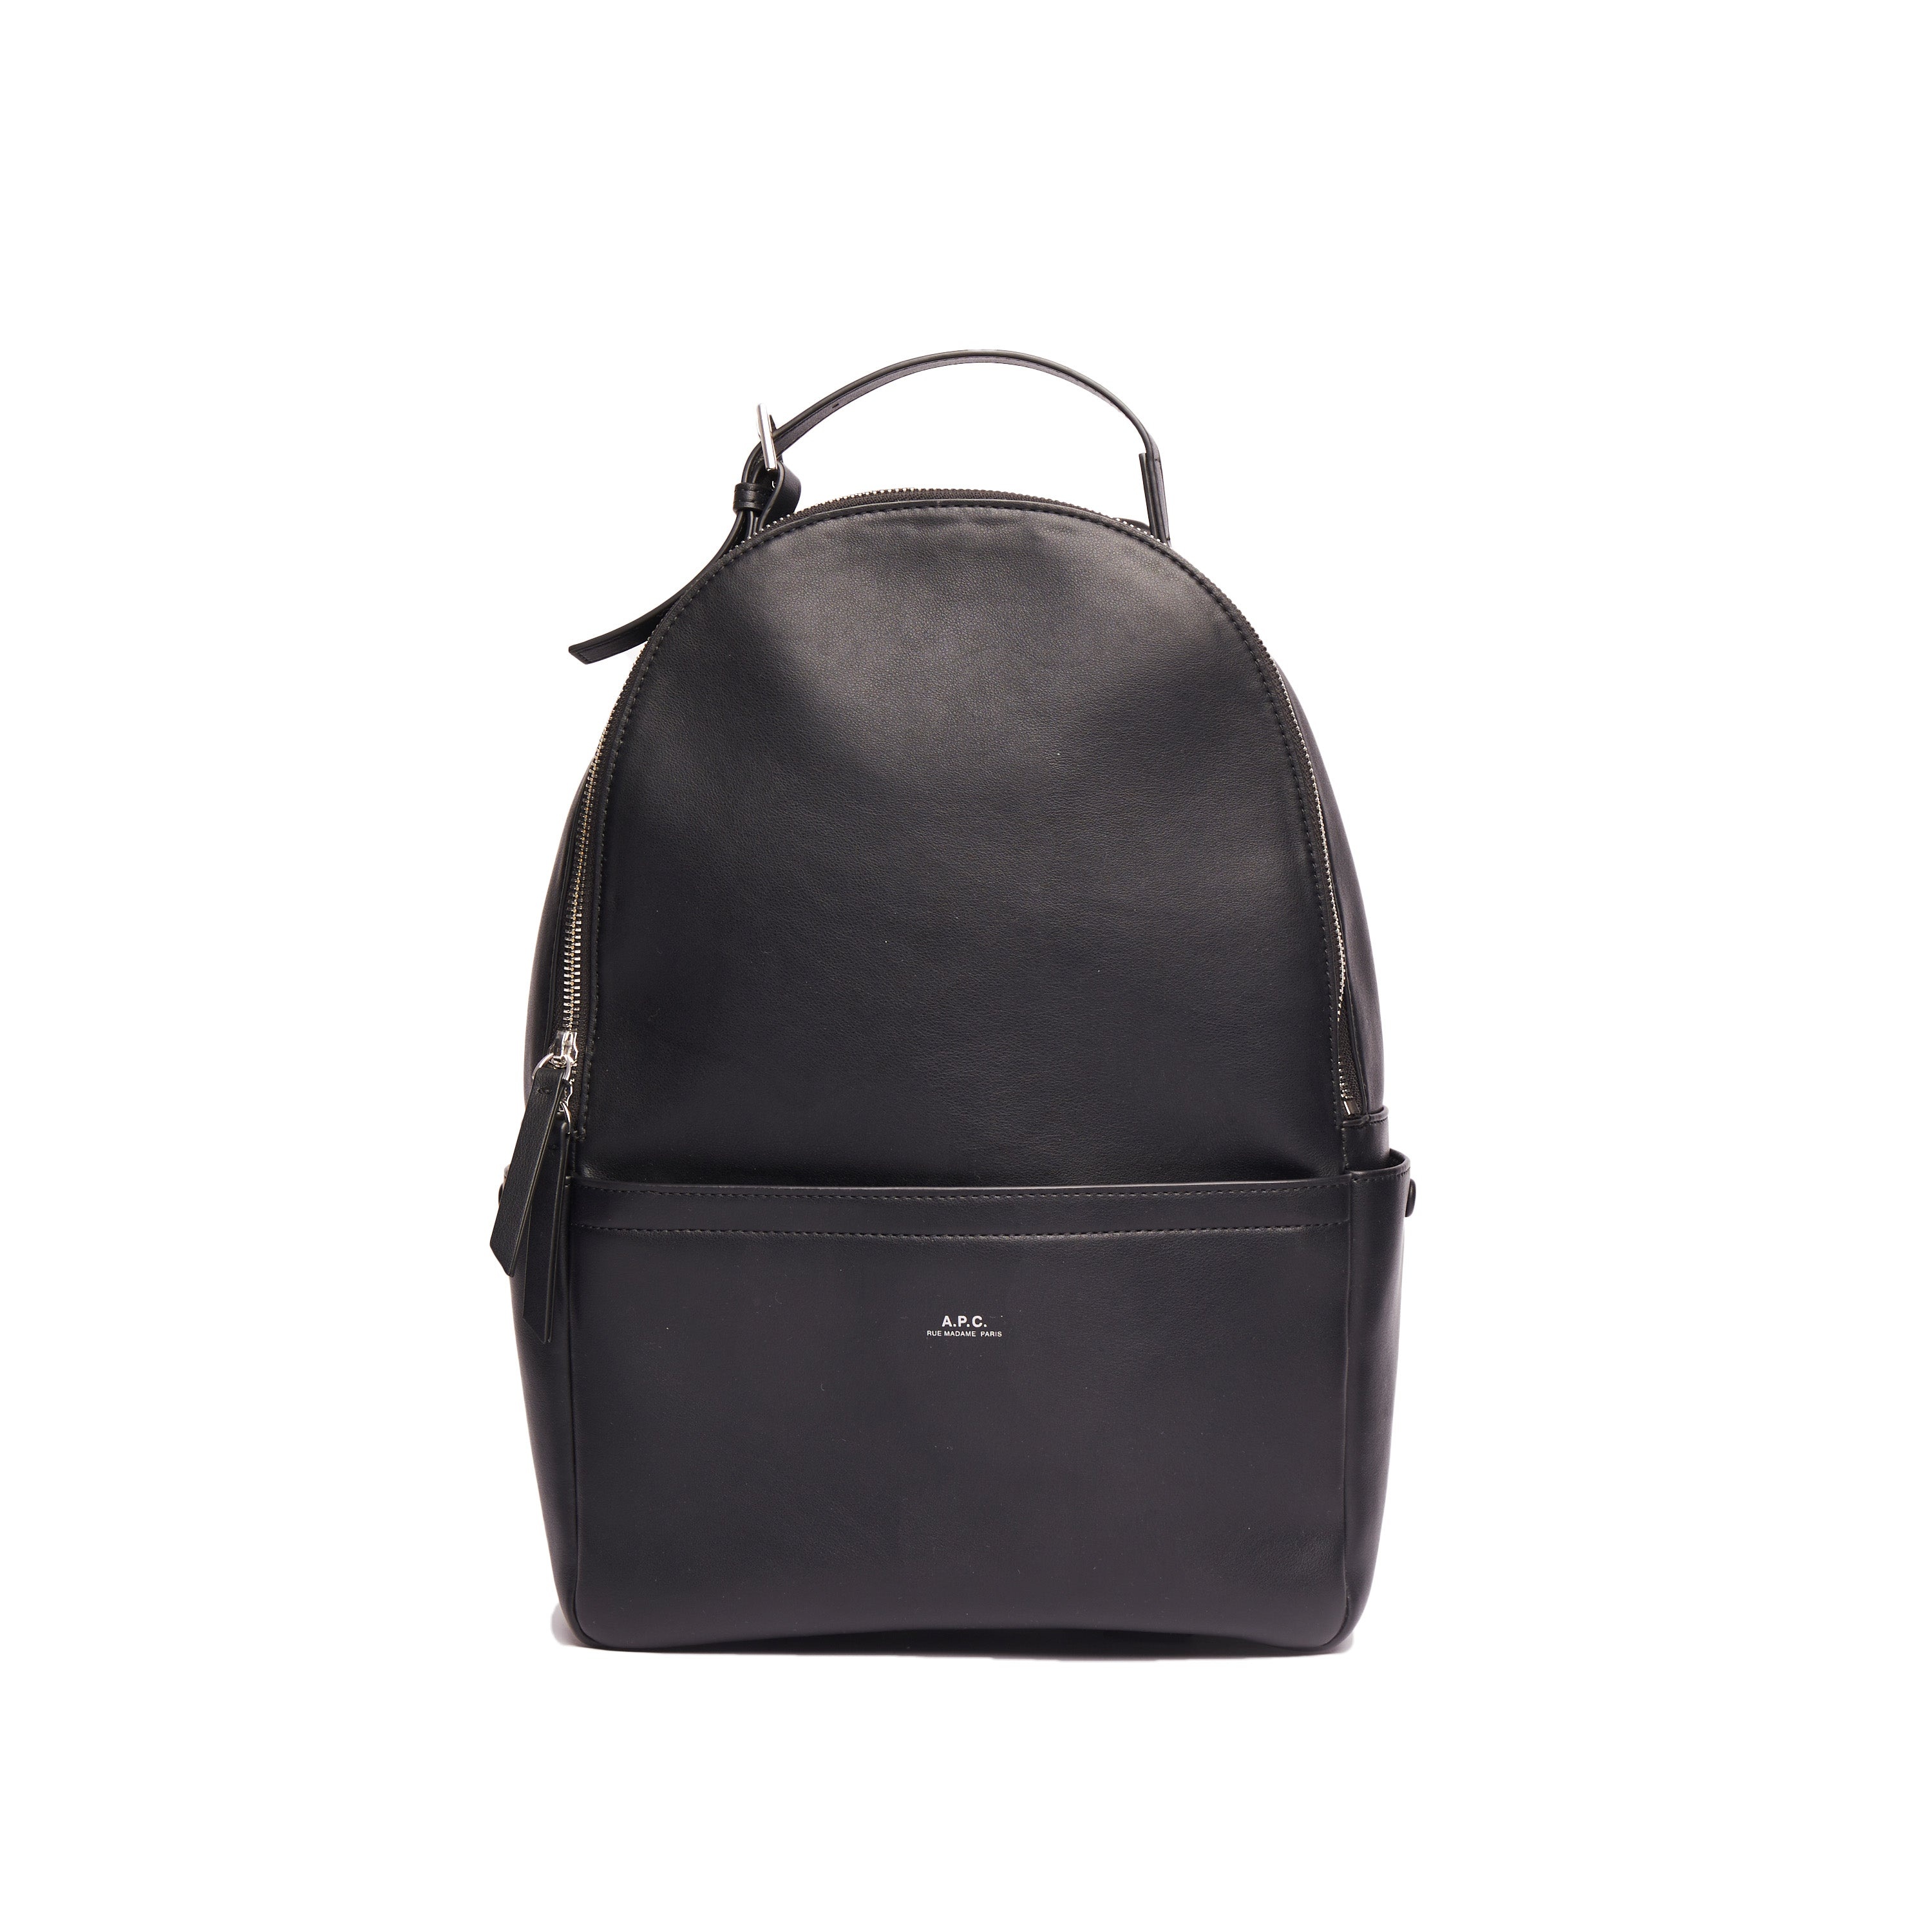 Nino backpack - 1